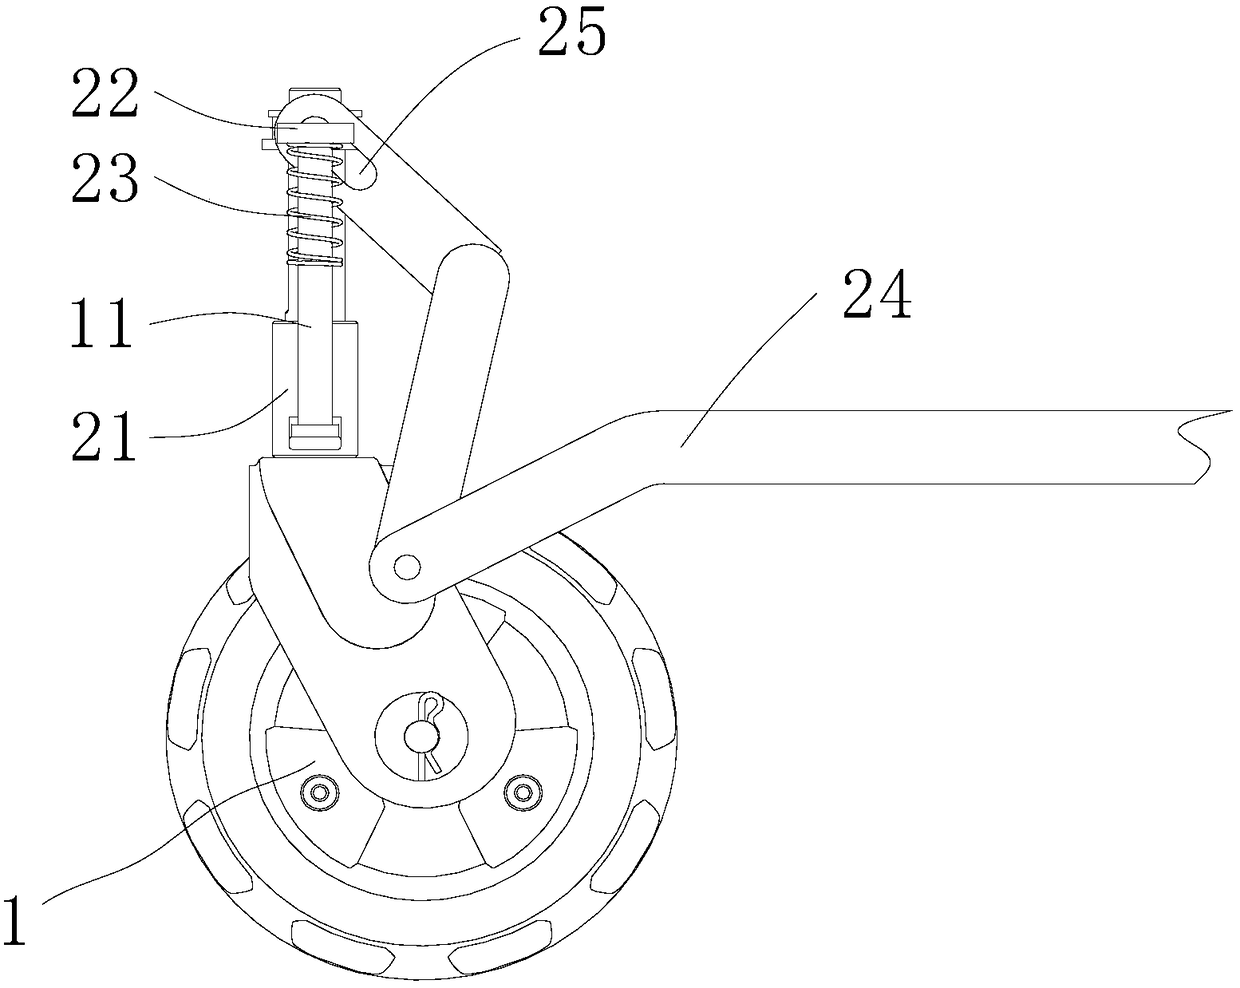 Universal wheel of height-regulating mechanism and walking equipment of universal wheel